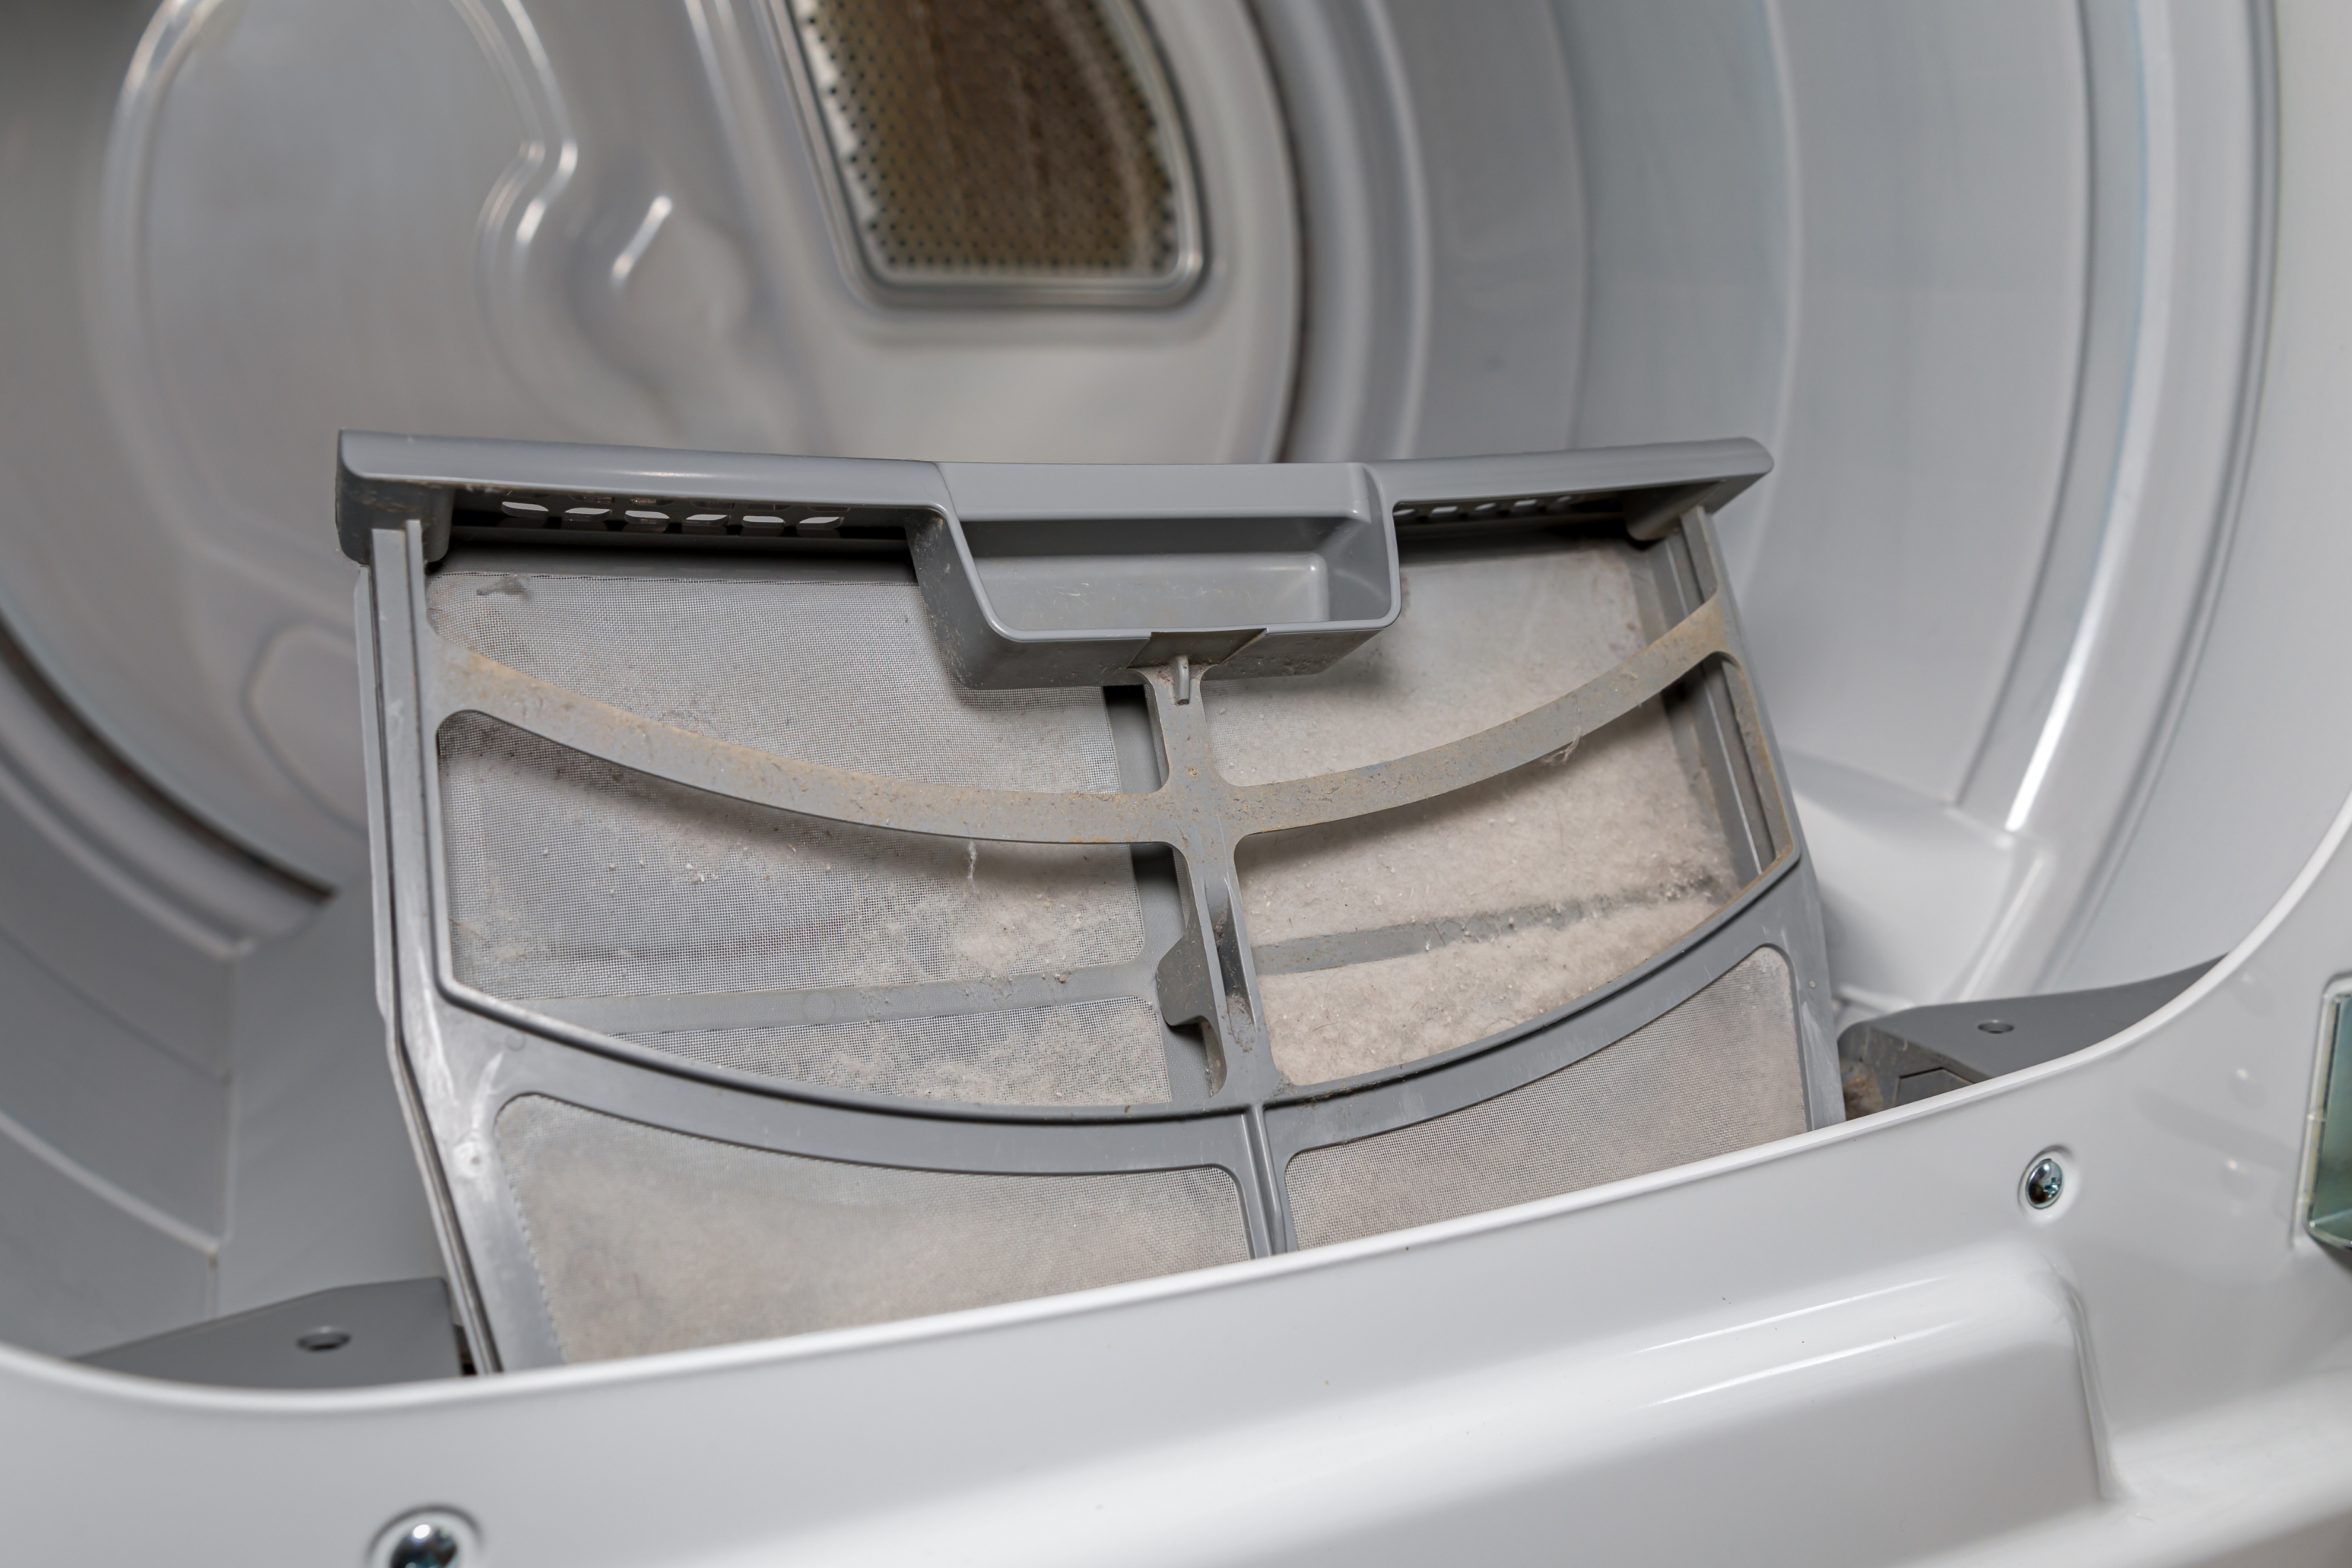 Interior sucio de una secadora, destacando el filtro que necesita limpieza para eliminar malos olores